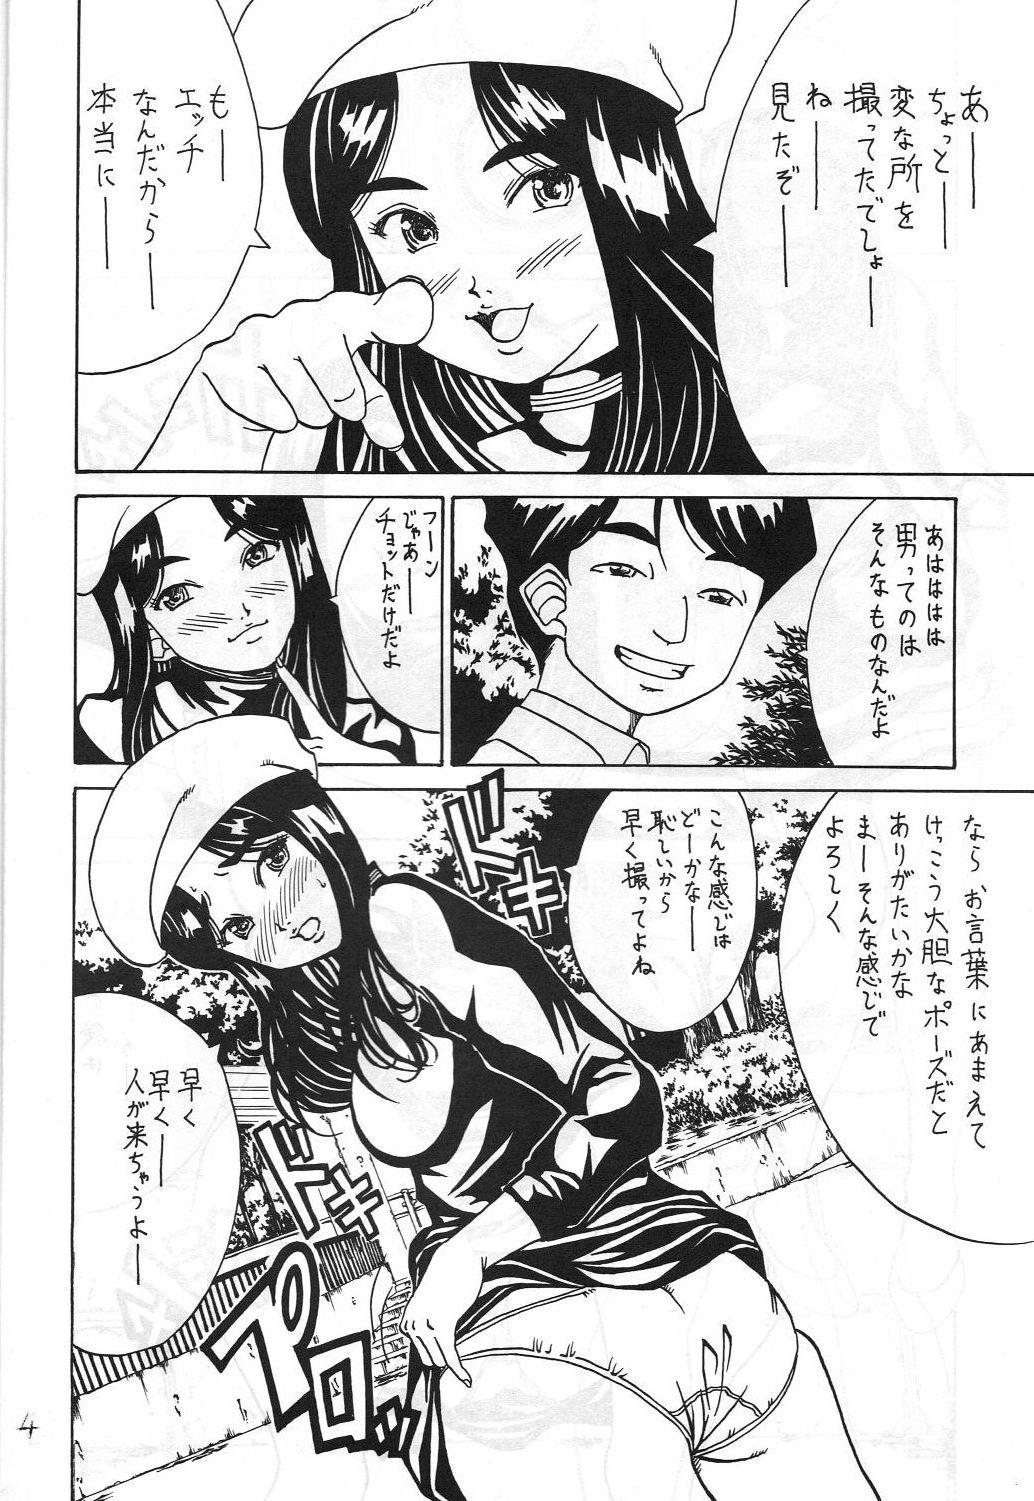 Young Kikansha ha Ore no Johnson in my life (Mitake) Eanakuoto (Ah! Megami-sama/Ah! My Goddess) - Ah my goddess Trimmed - Page 5